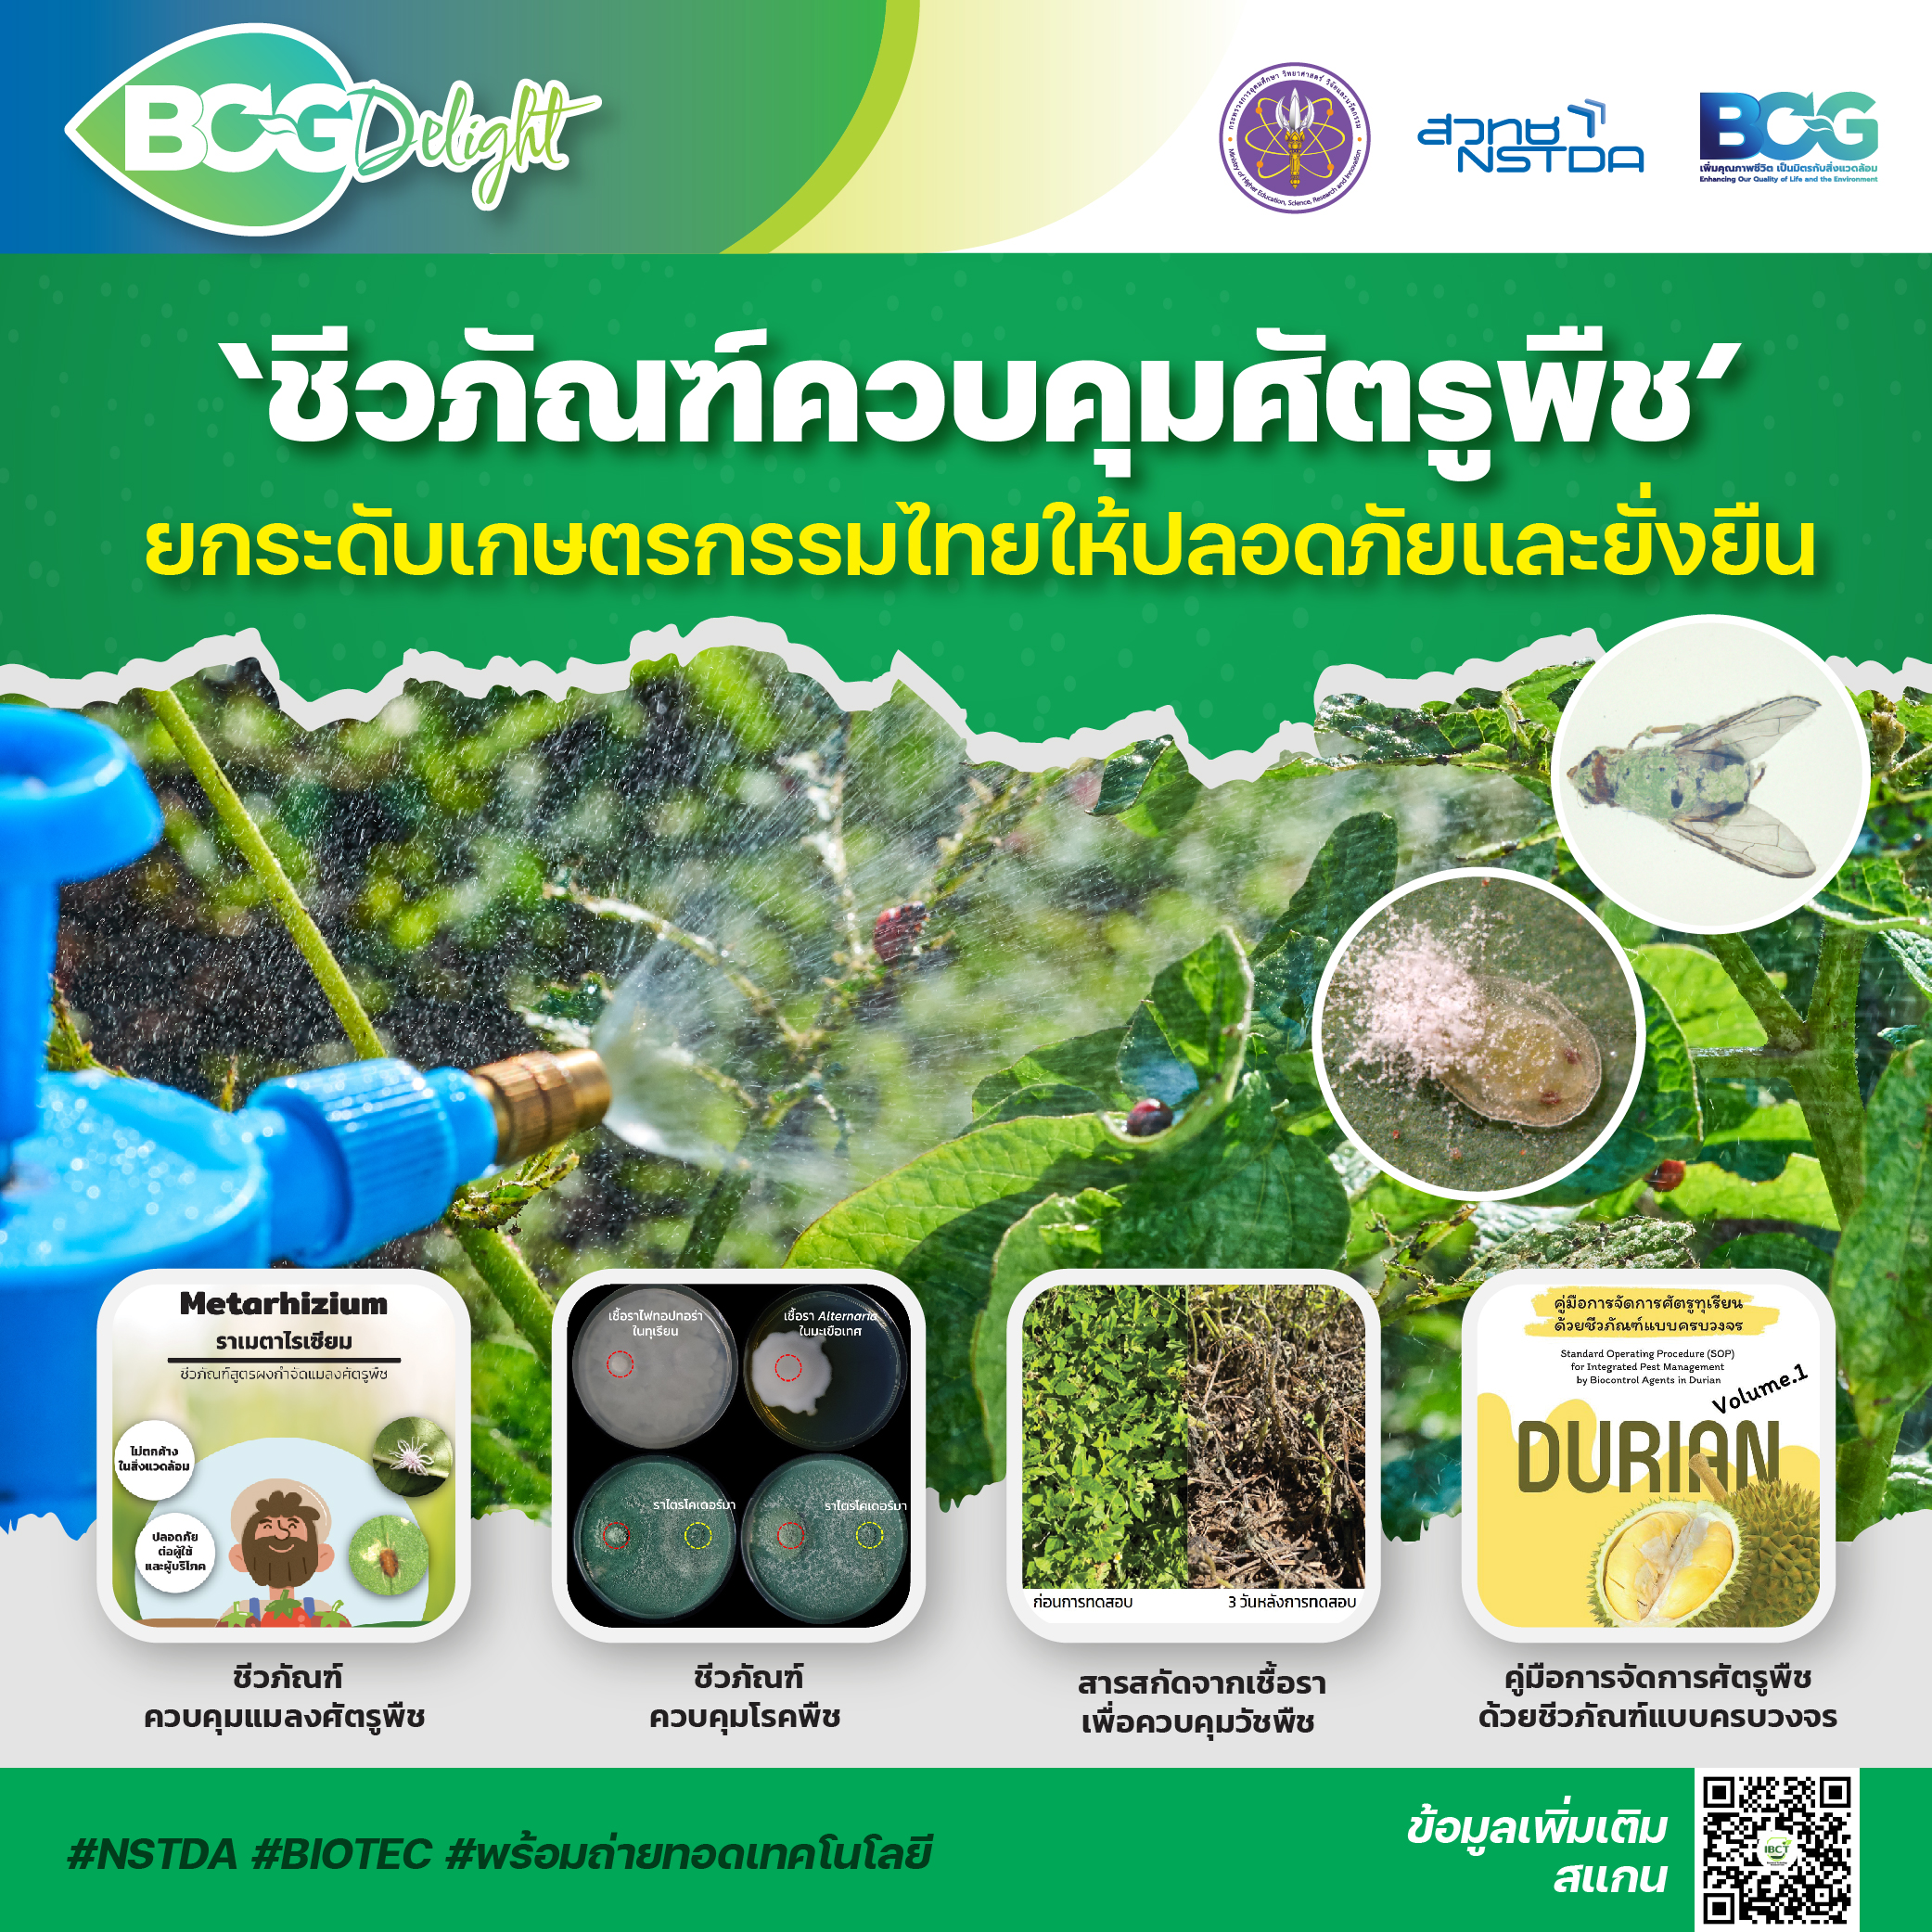 ‘ชีวภัณฑ์ควบคุมศัตรูพืช’ ยกระดับเกษตรกรรมไทยให้ปลอดภัยและยั่งยืน